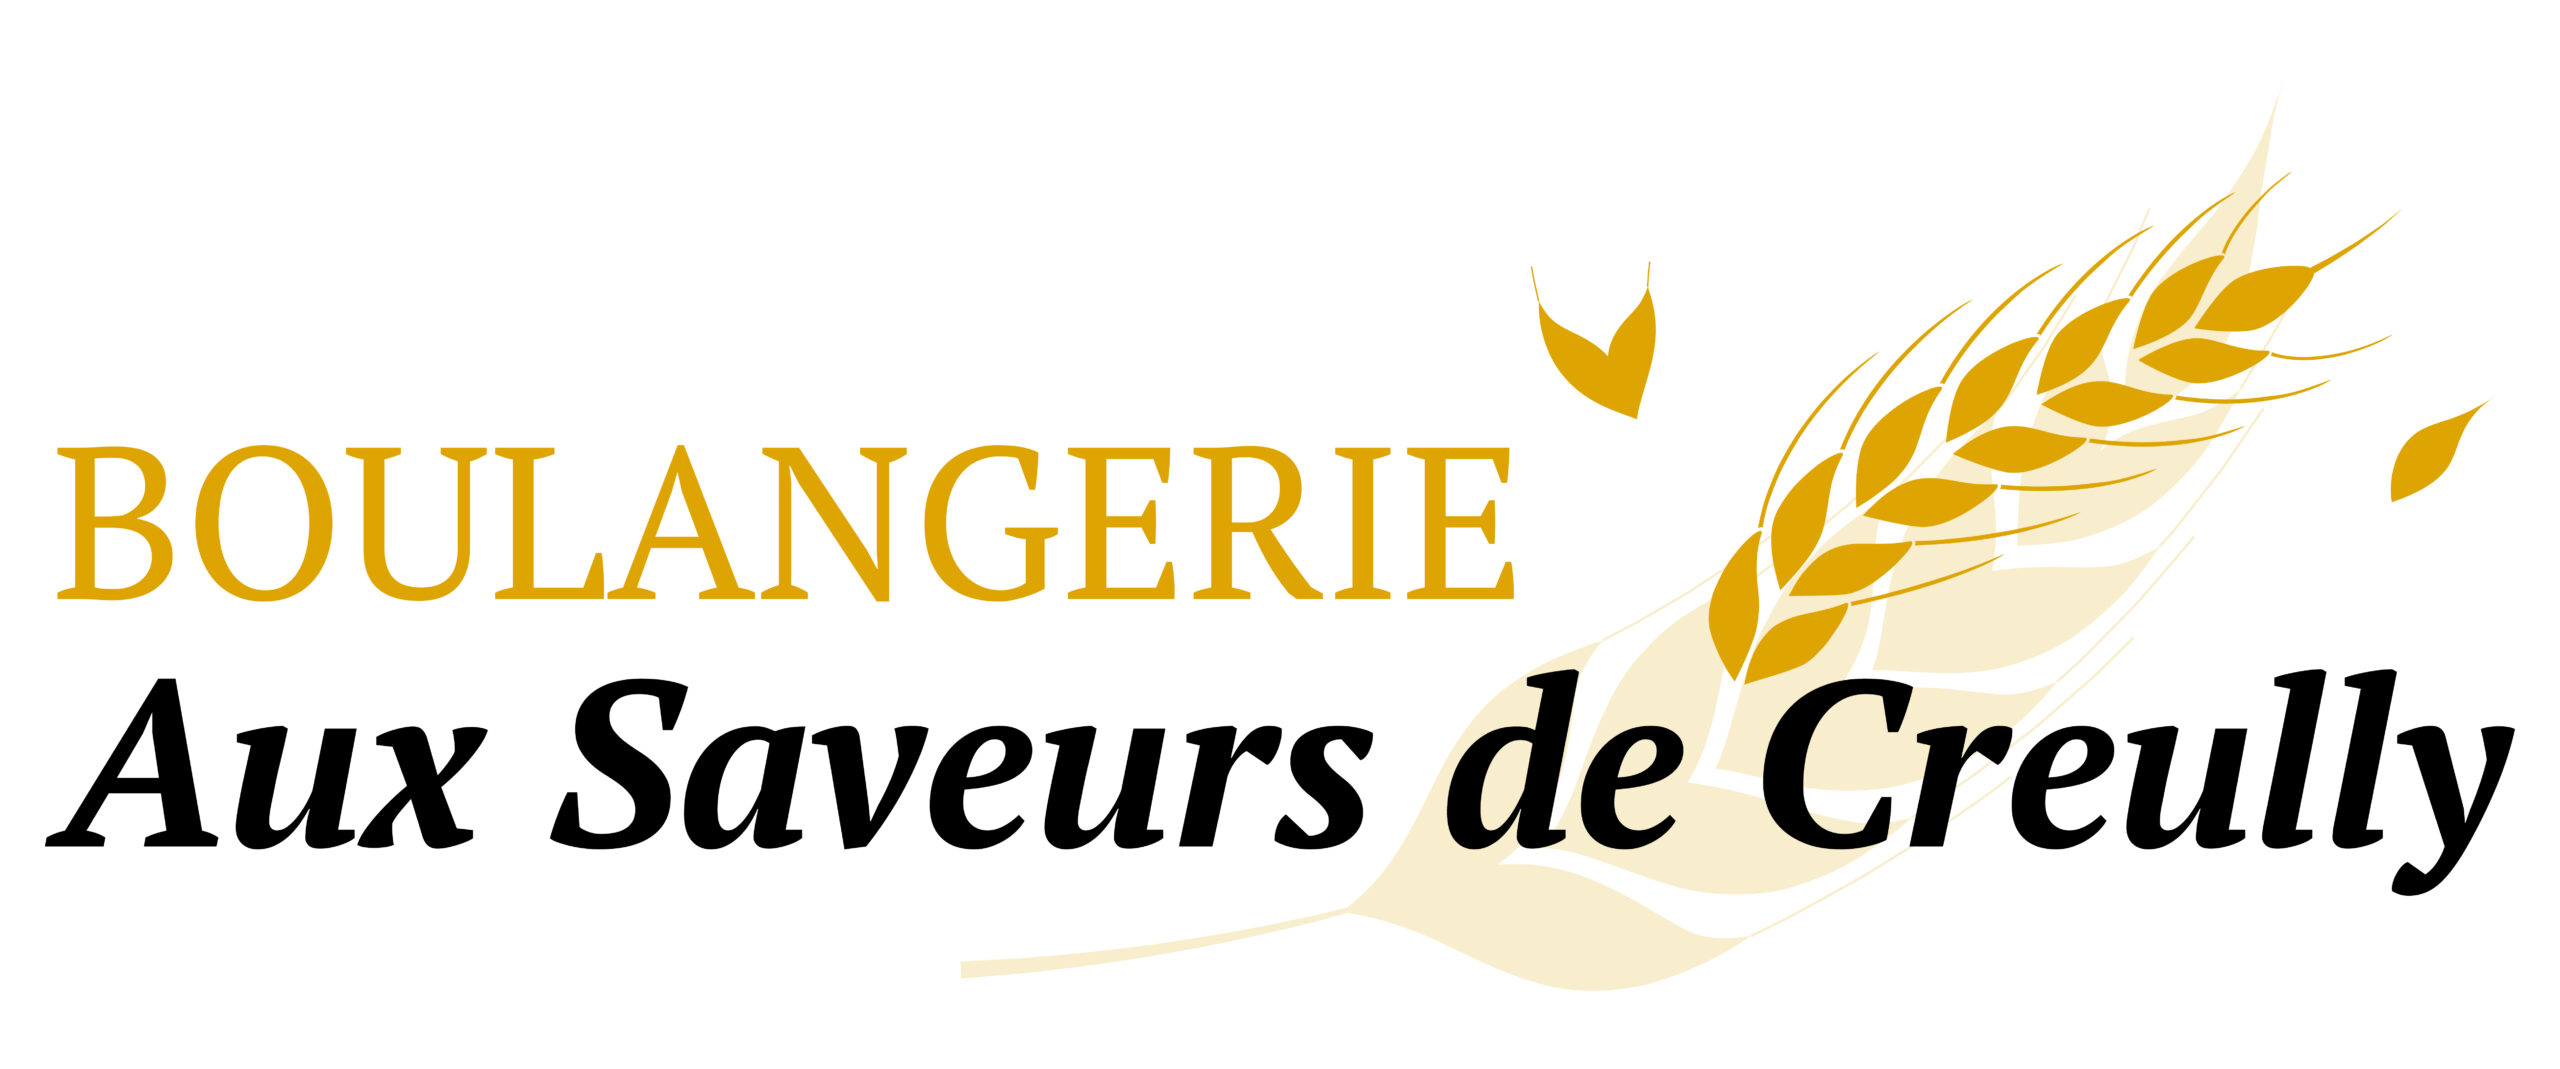 Logo de la Boulangerie Aux Saveurs de Creully Création Sophie Dupont pour prismirisweb